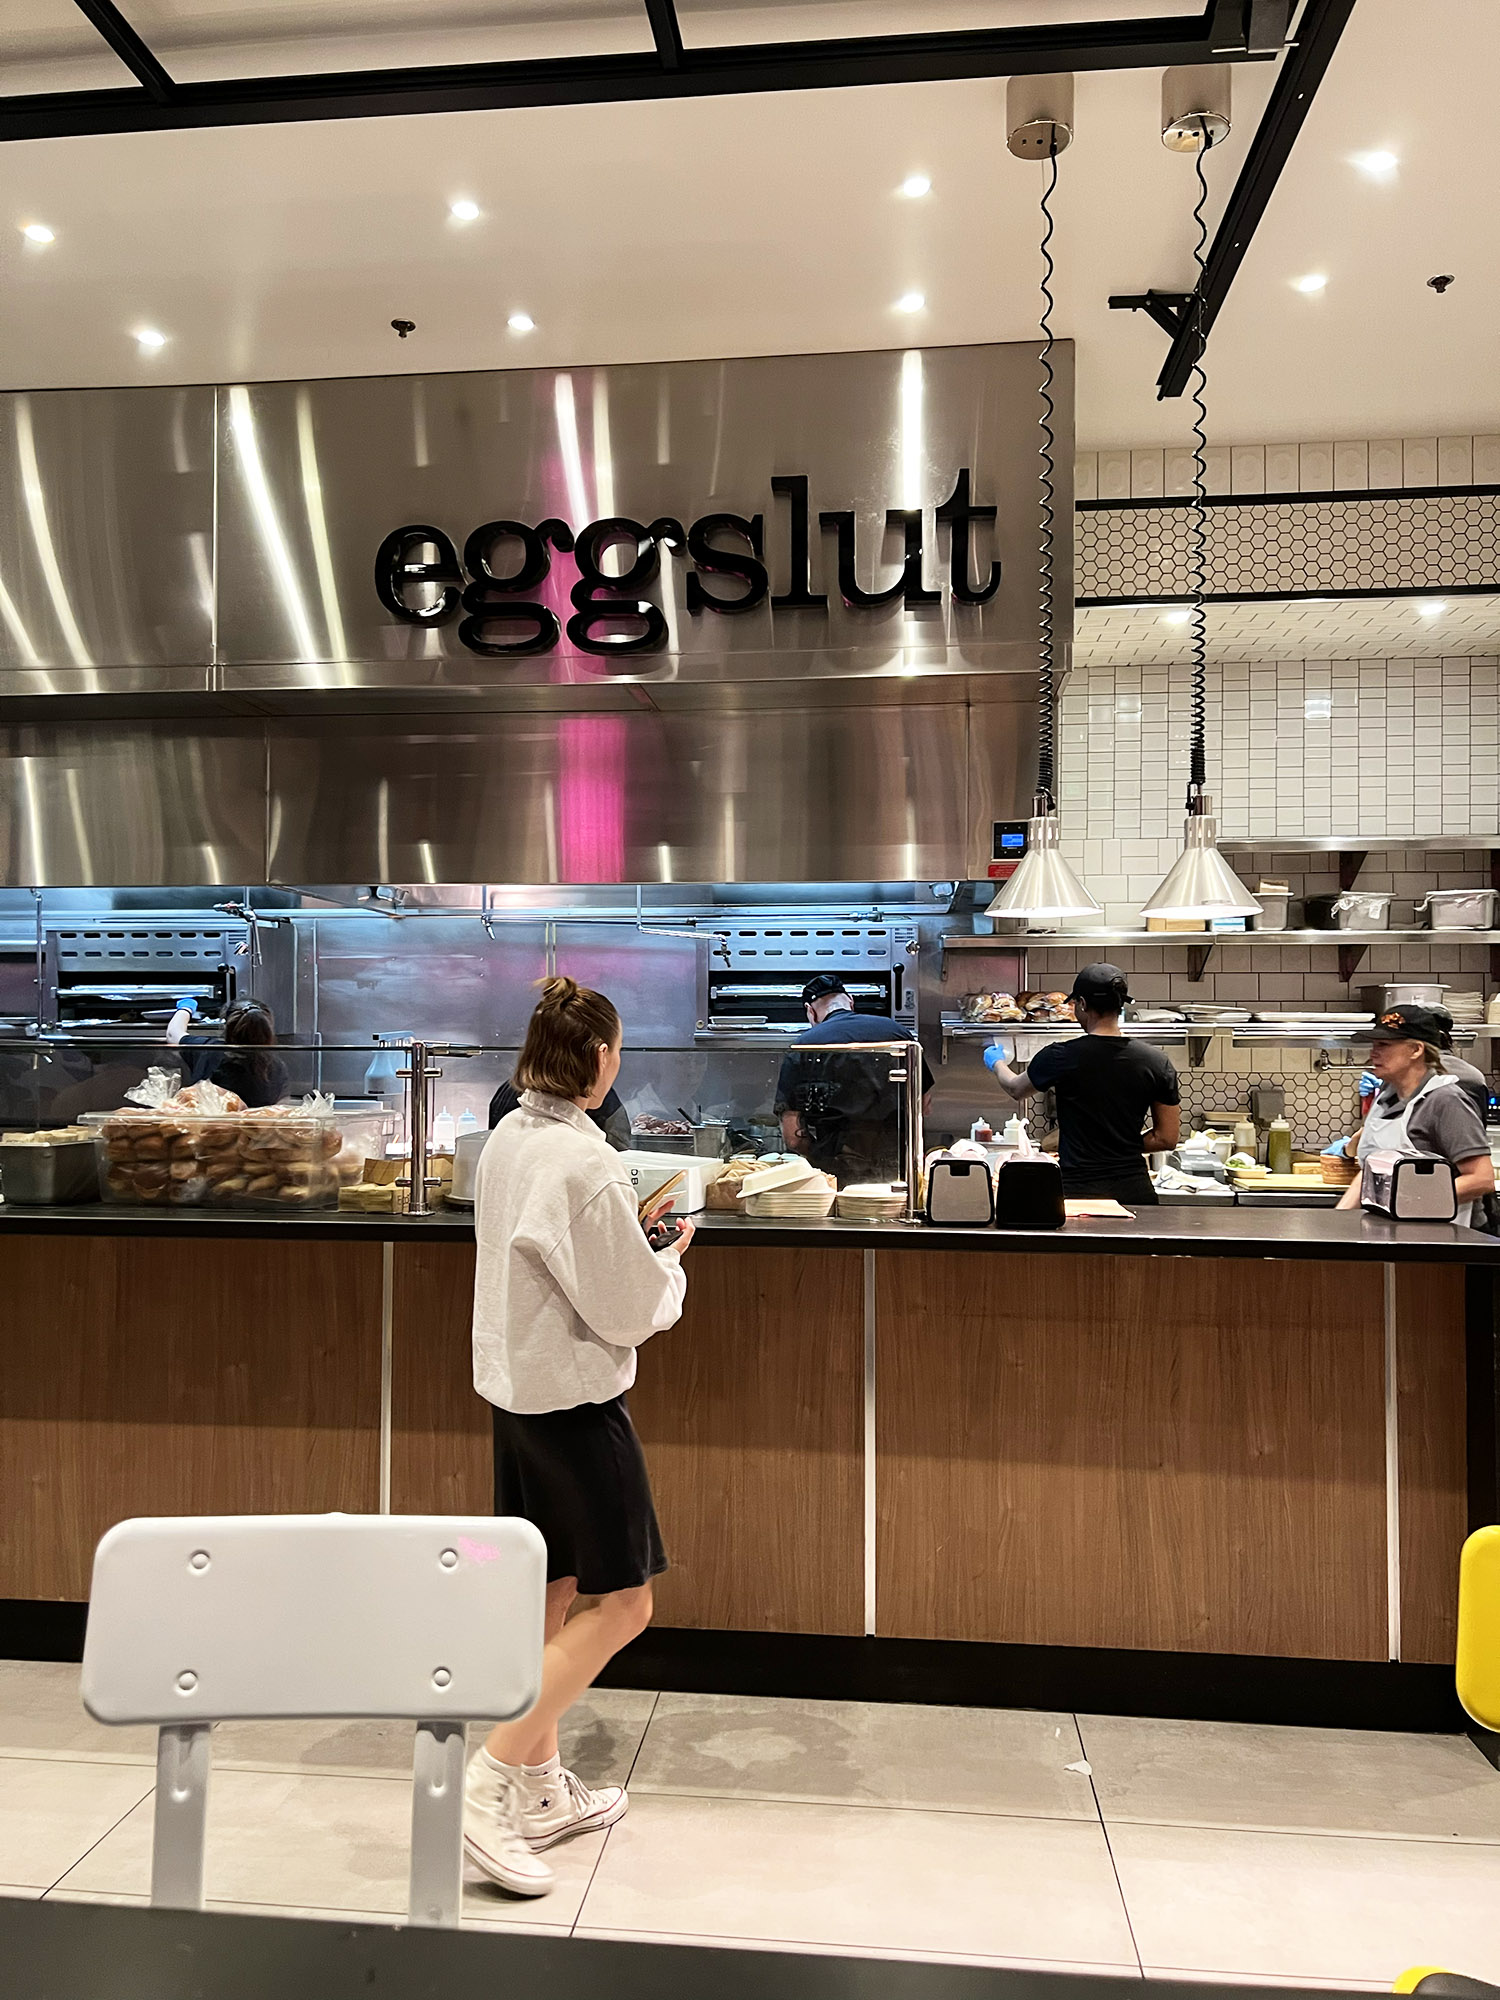 Las Vegas: Eggslut - Værd at stå i kø for